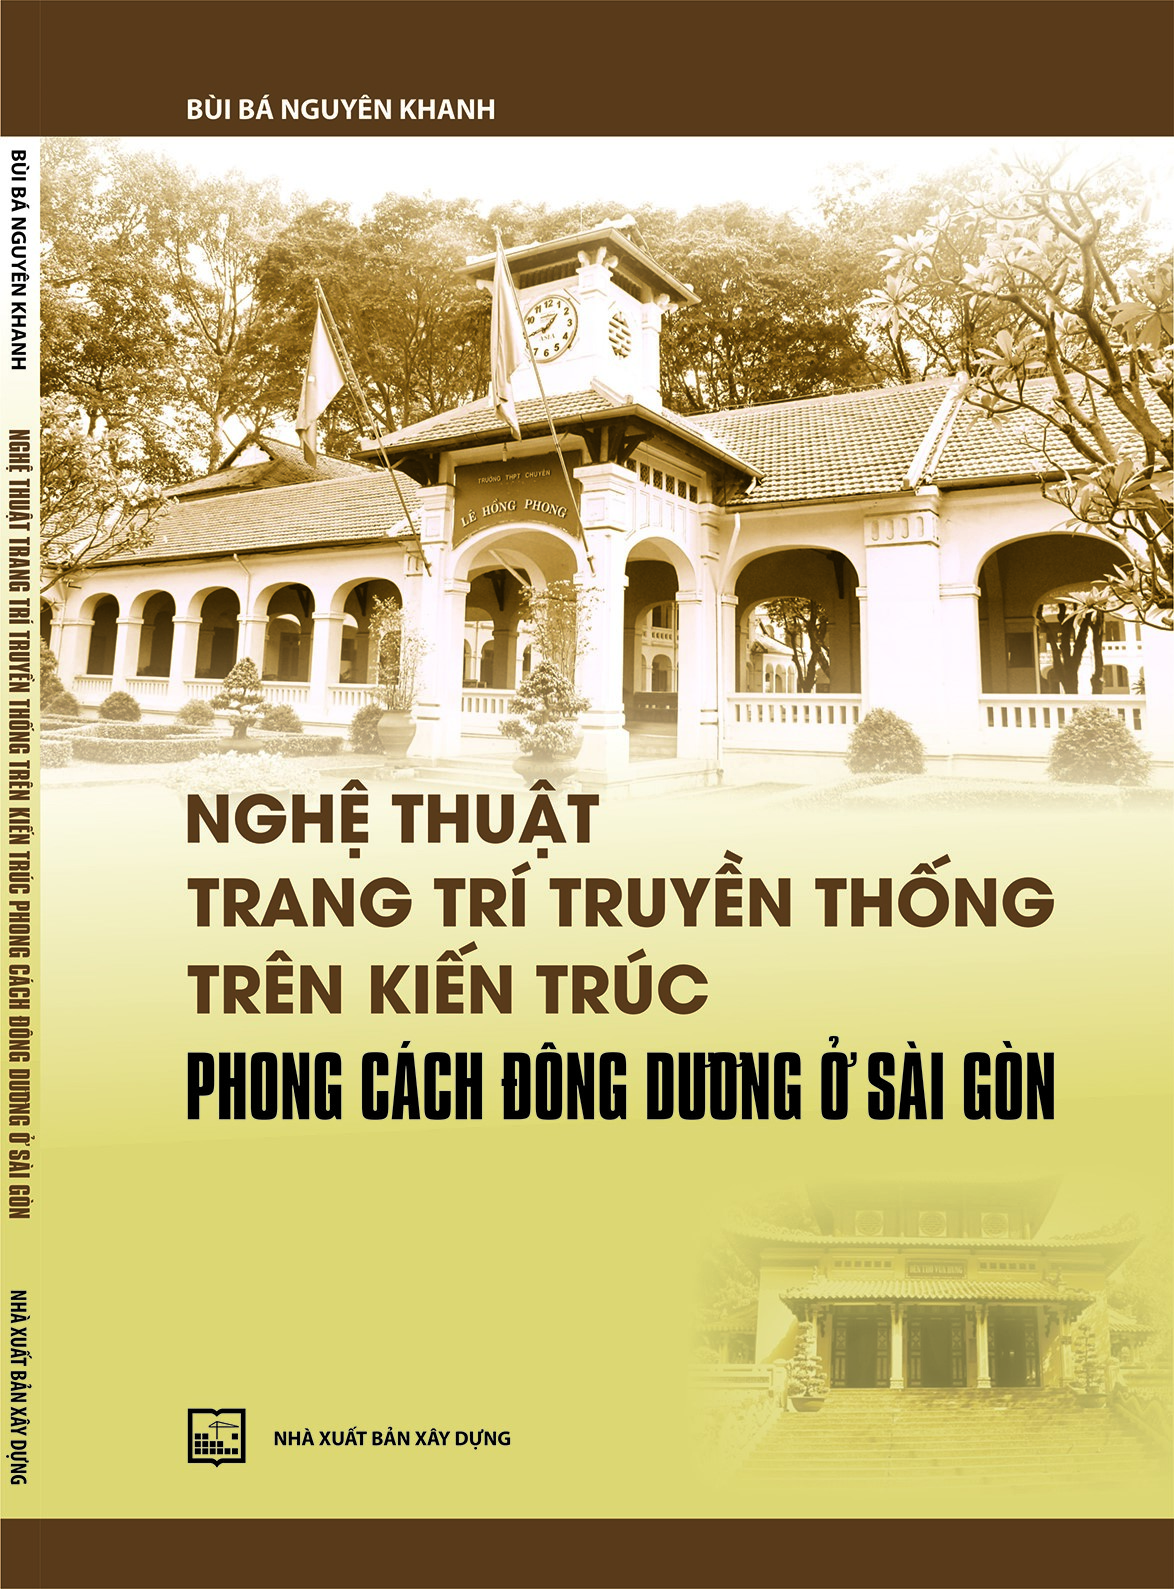 Nghệ thuật trang trí truyền thống trên kiến trúc phong cách Đông Dương ở Sài Gòn